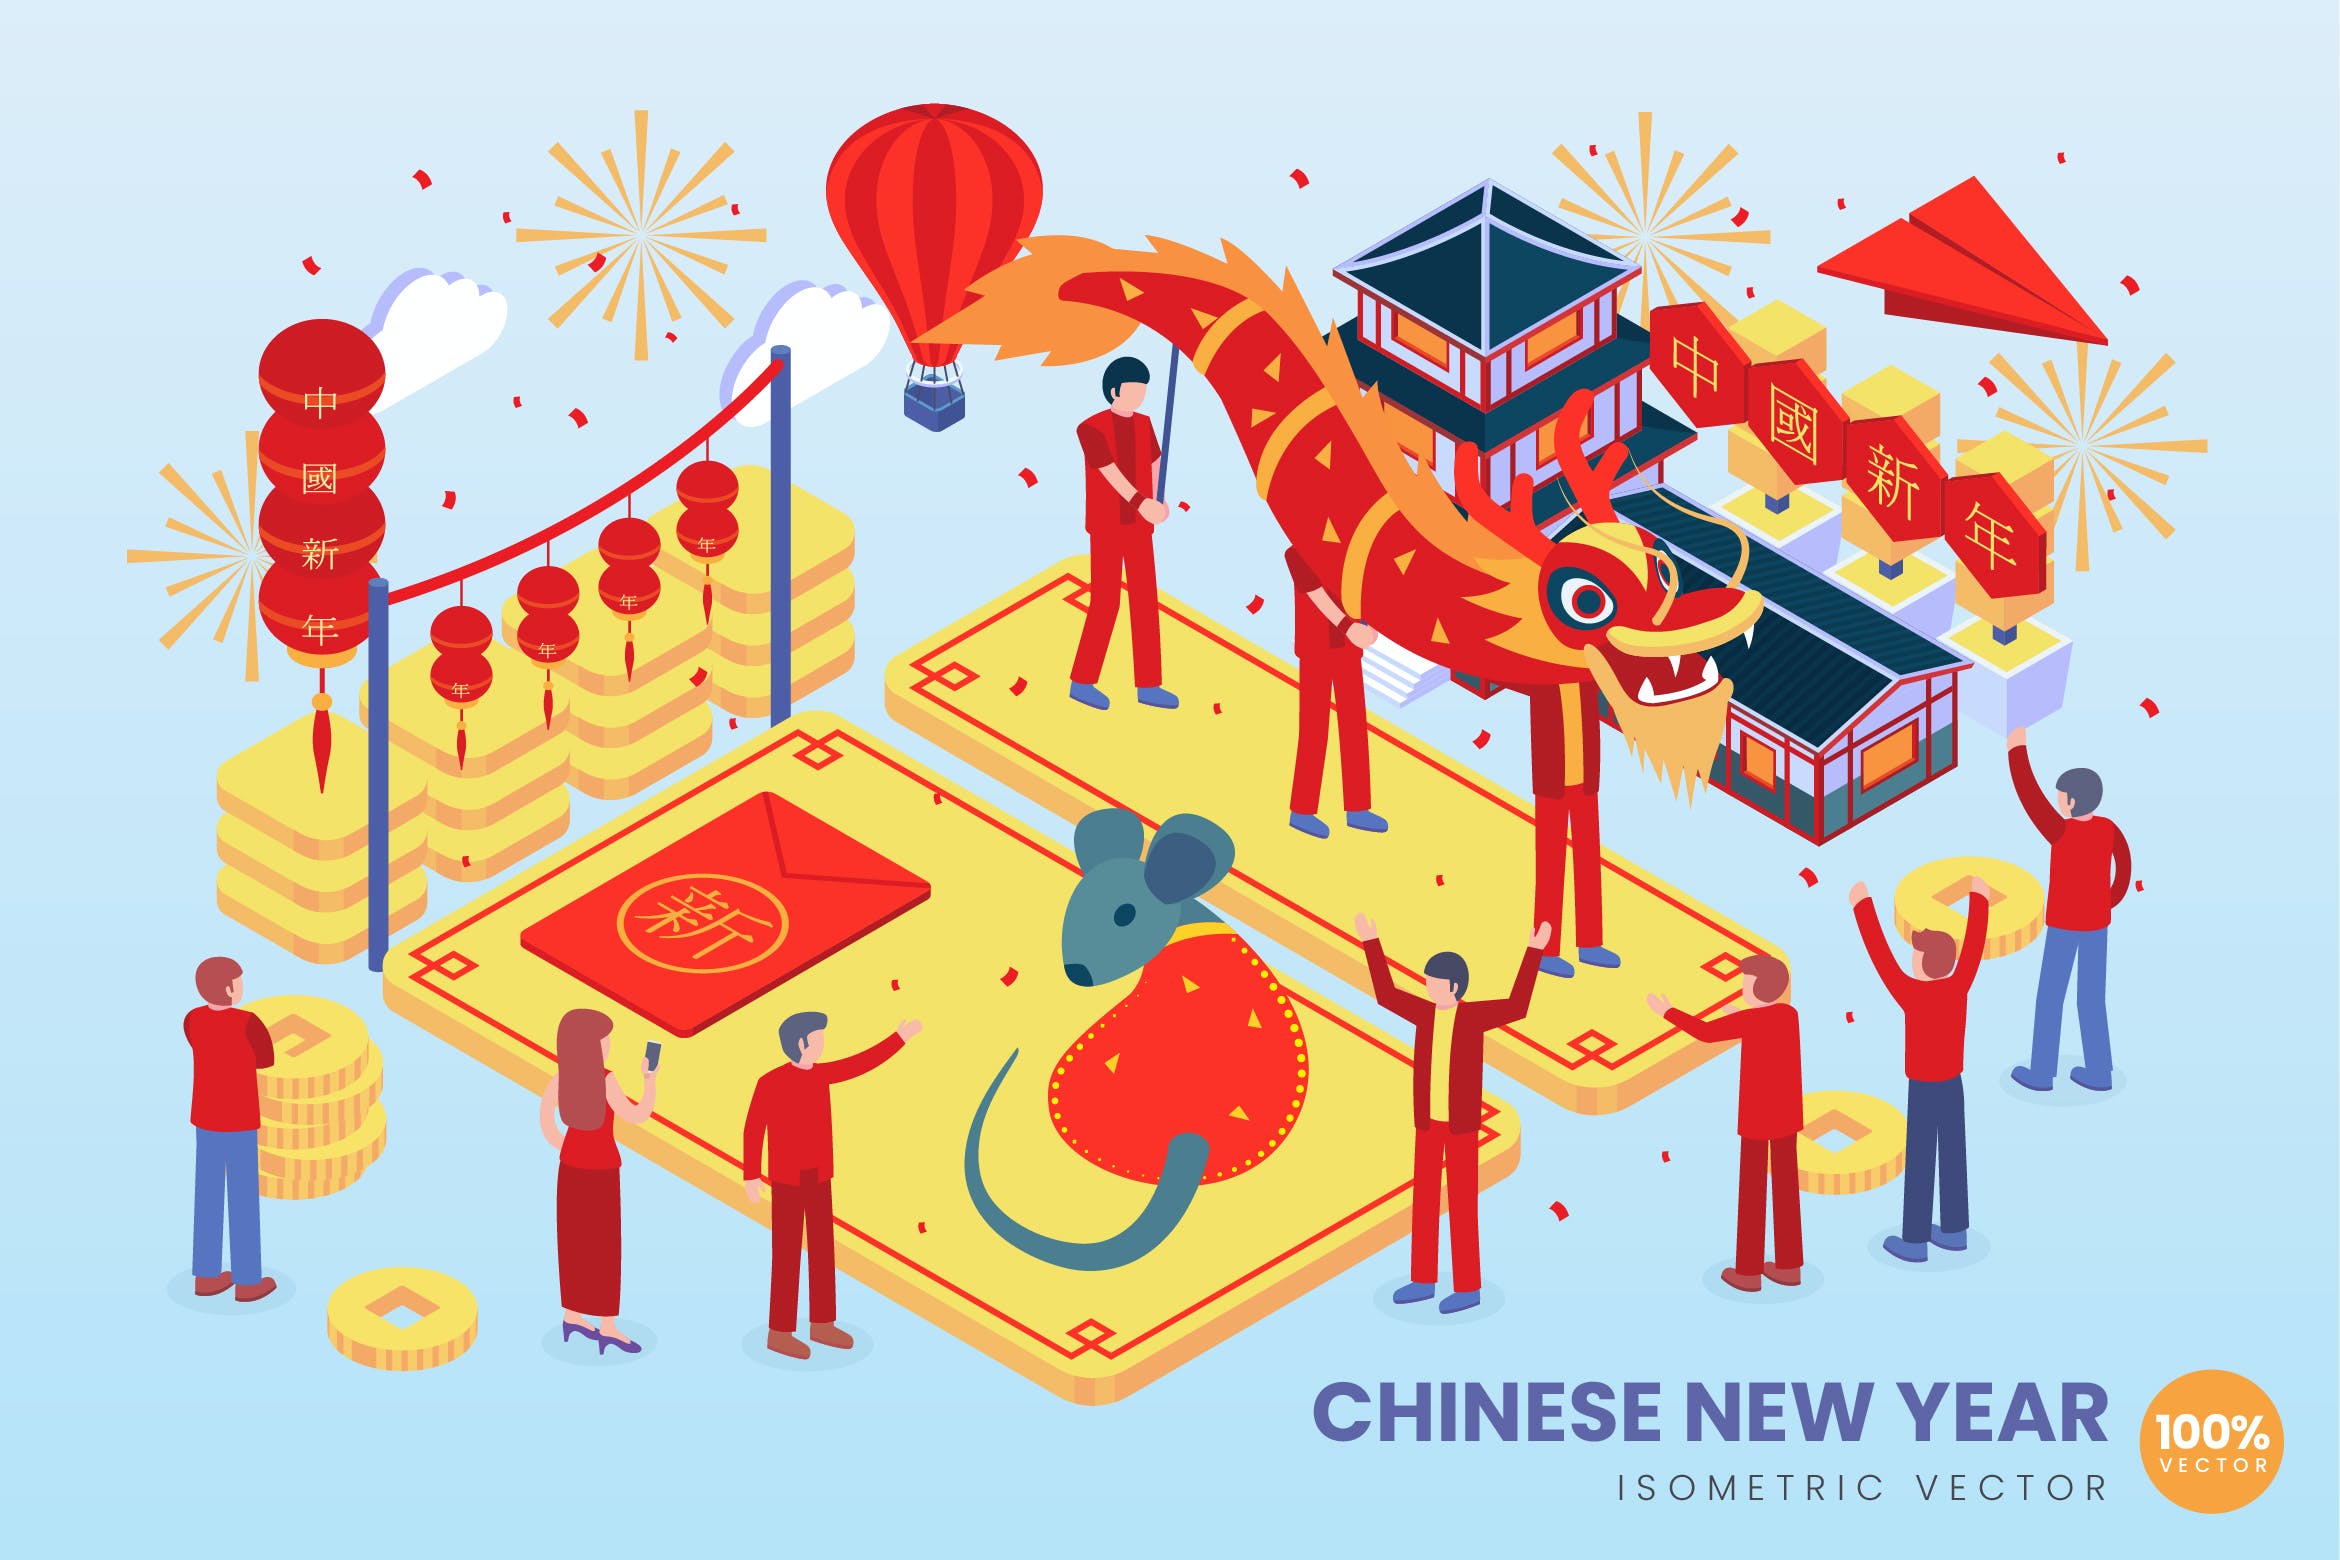 主题概念农历新年插画矢量素材 Isometric Chinese New Year Vector Concept设计素材模板